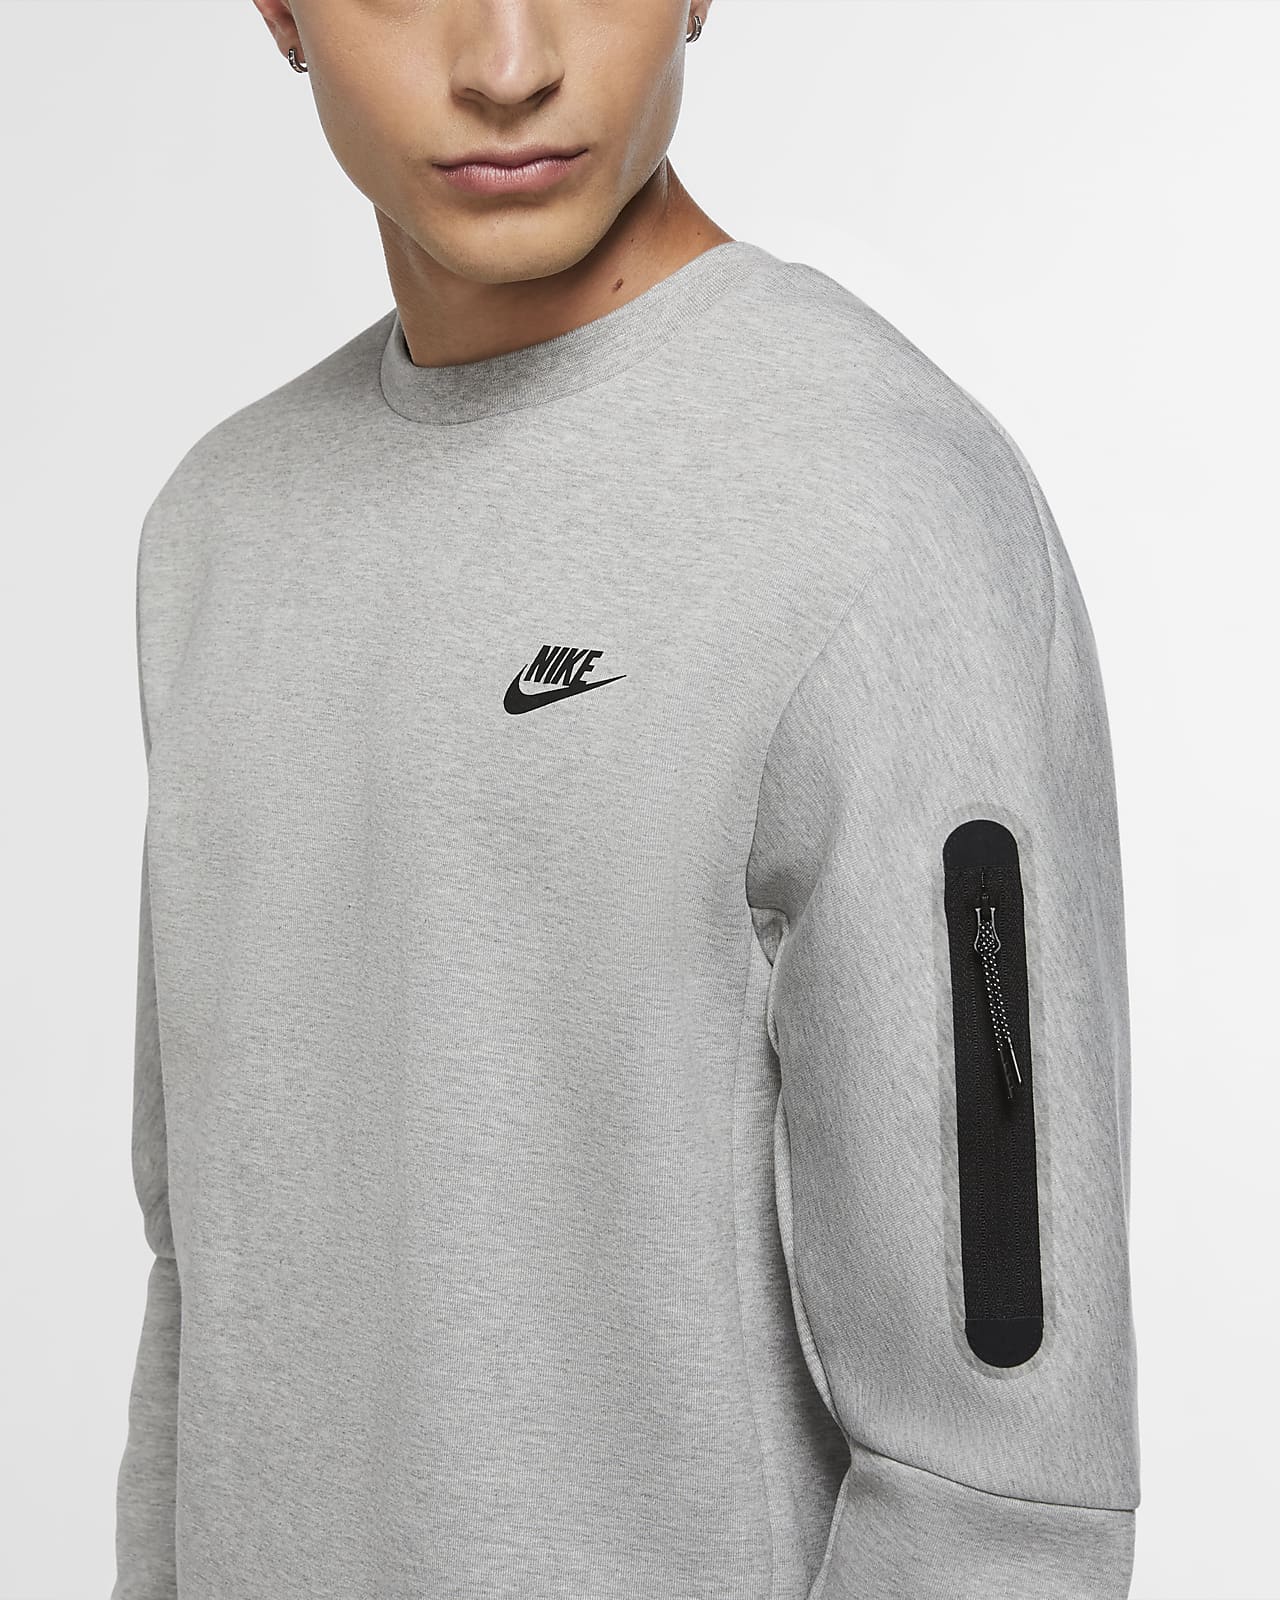 diagonal cartucho mínimo Nike Sportswear Tech Fleece Men's Crew Sweatshirt. Nike LU